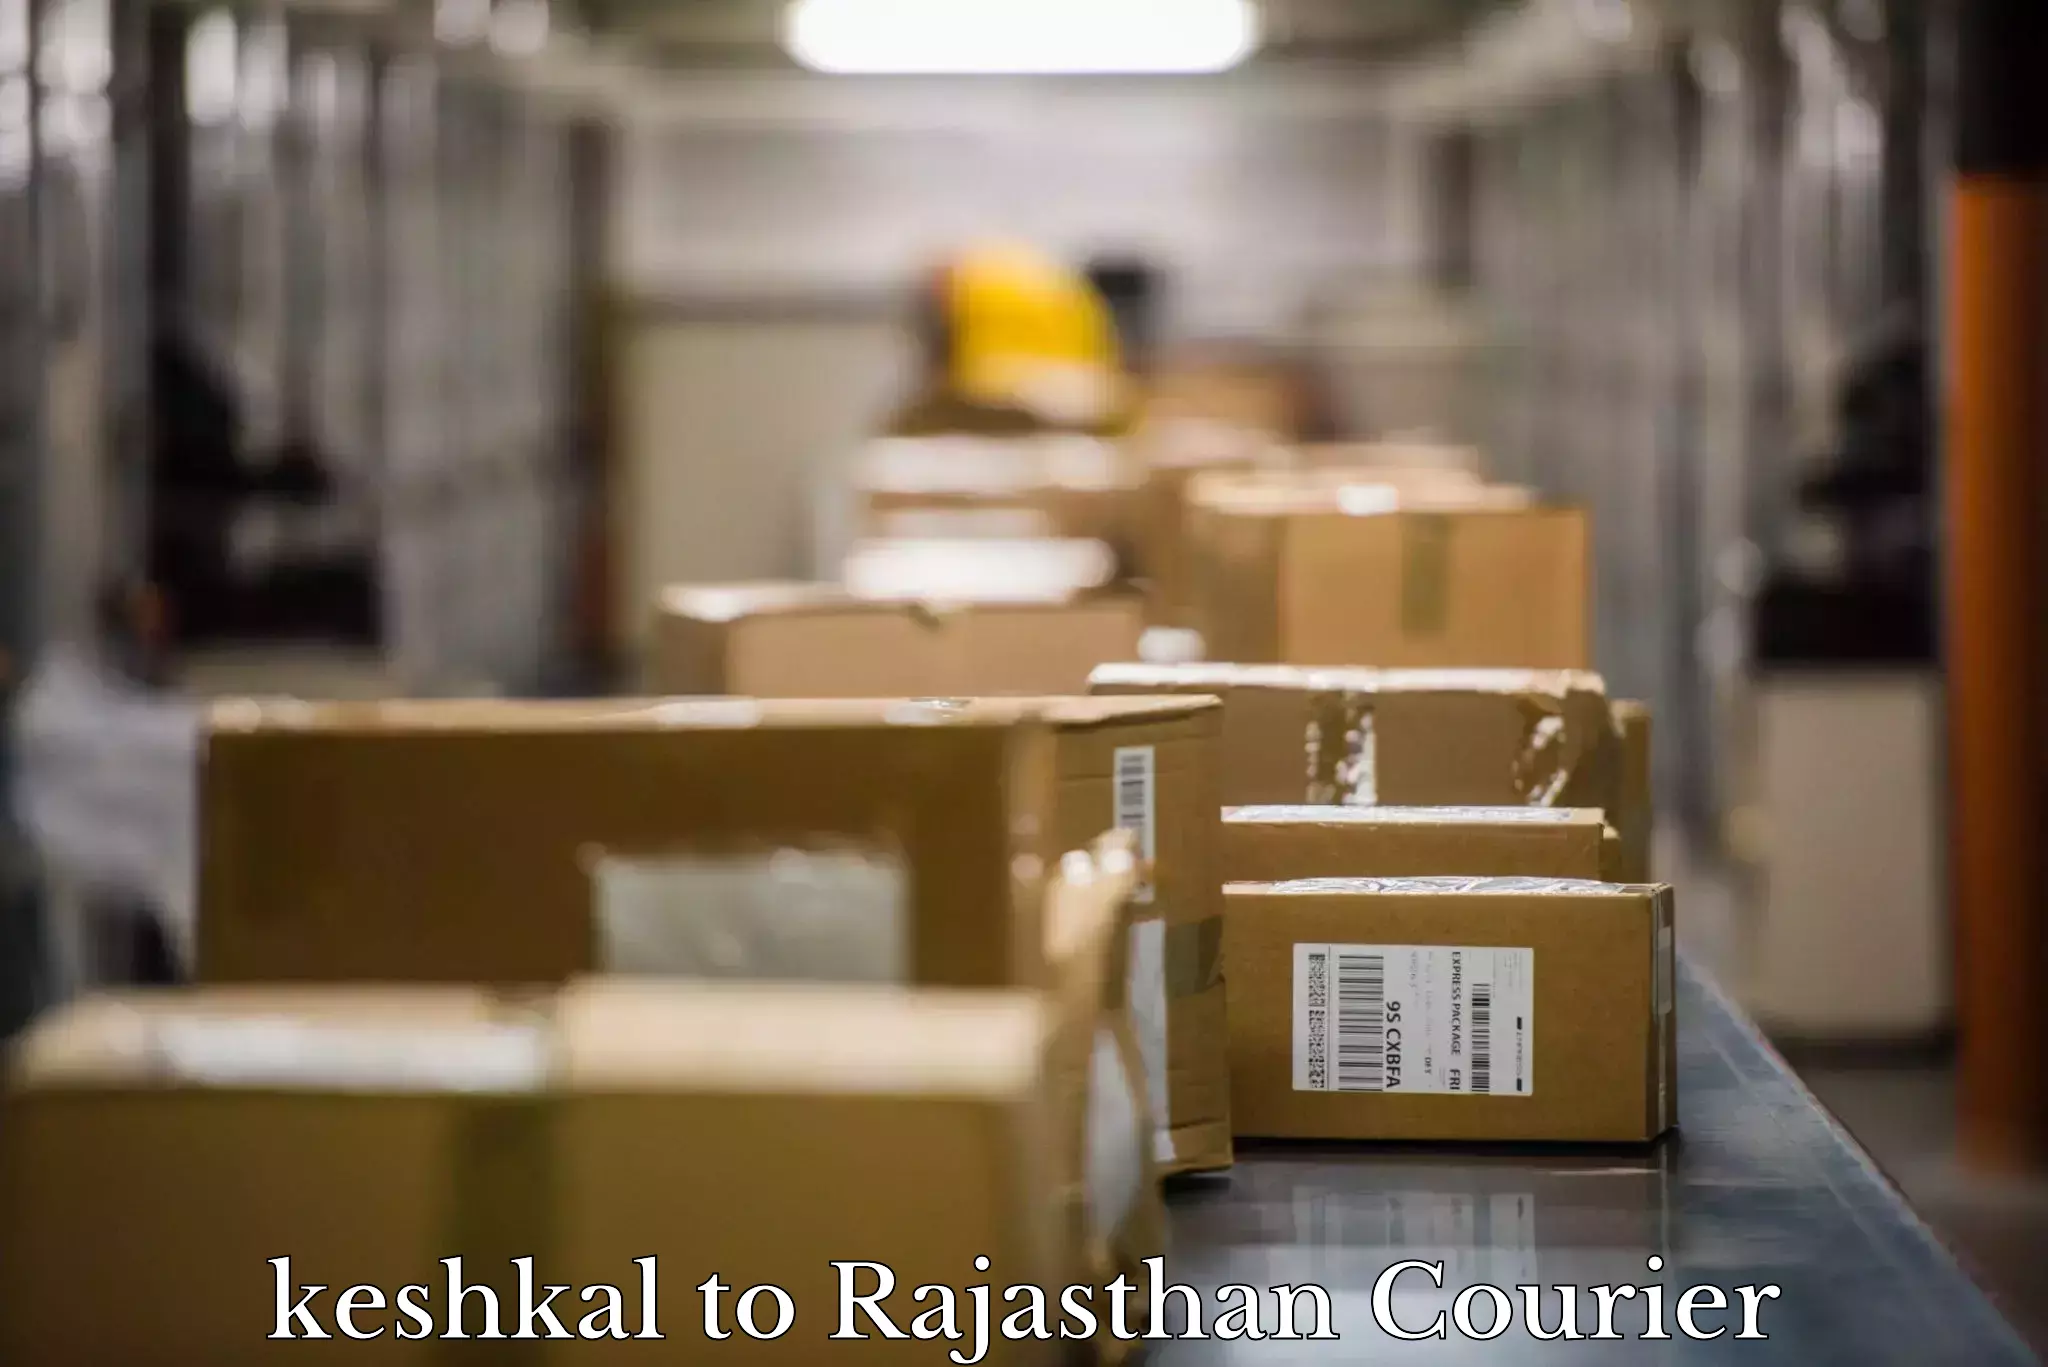 Efficient moving and packing keshkal to Viratnagar